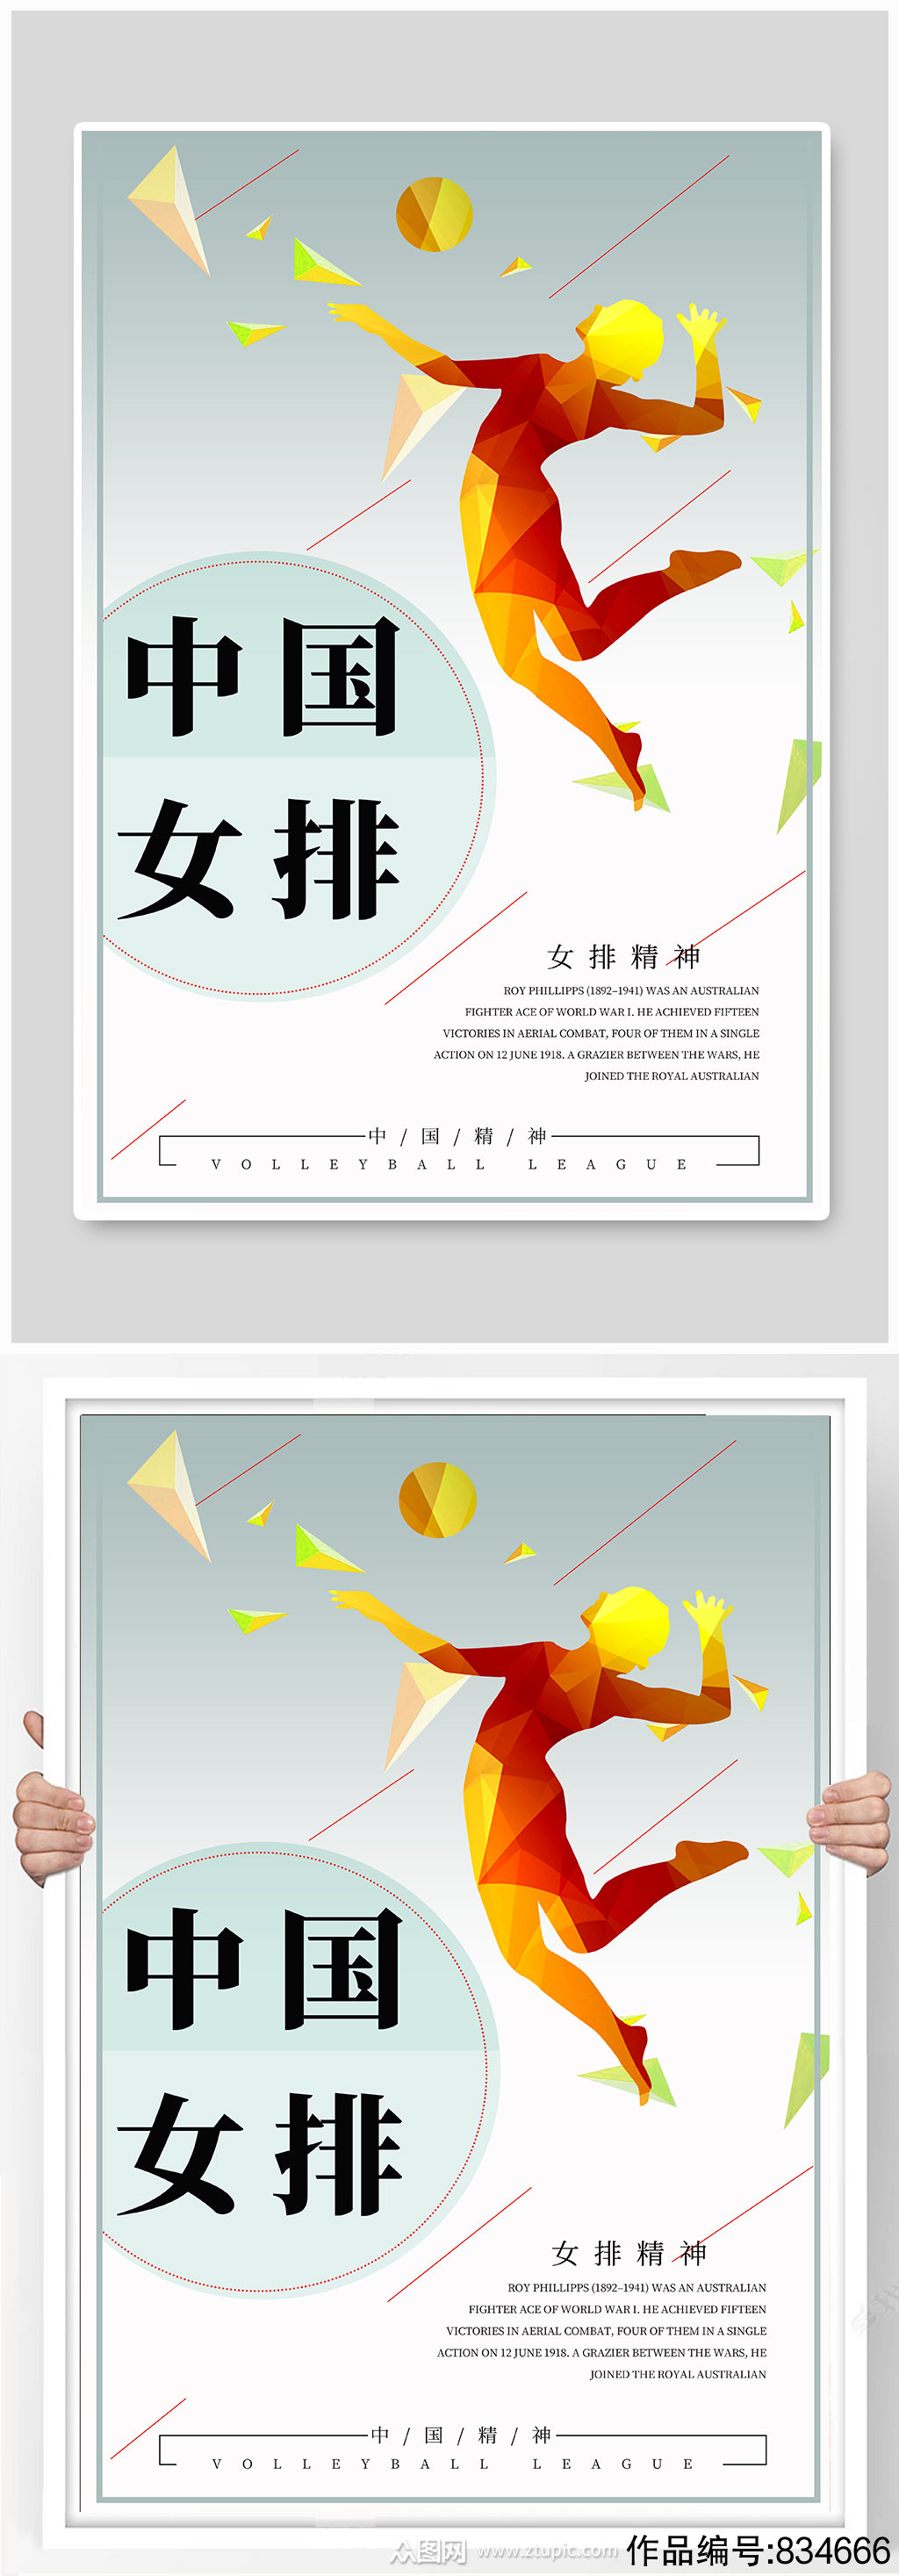 中国女排精神宣传海报素材